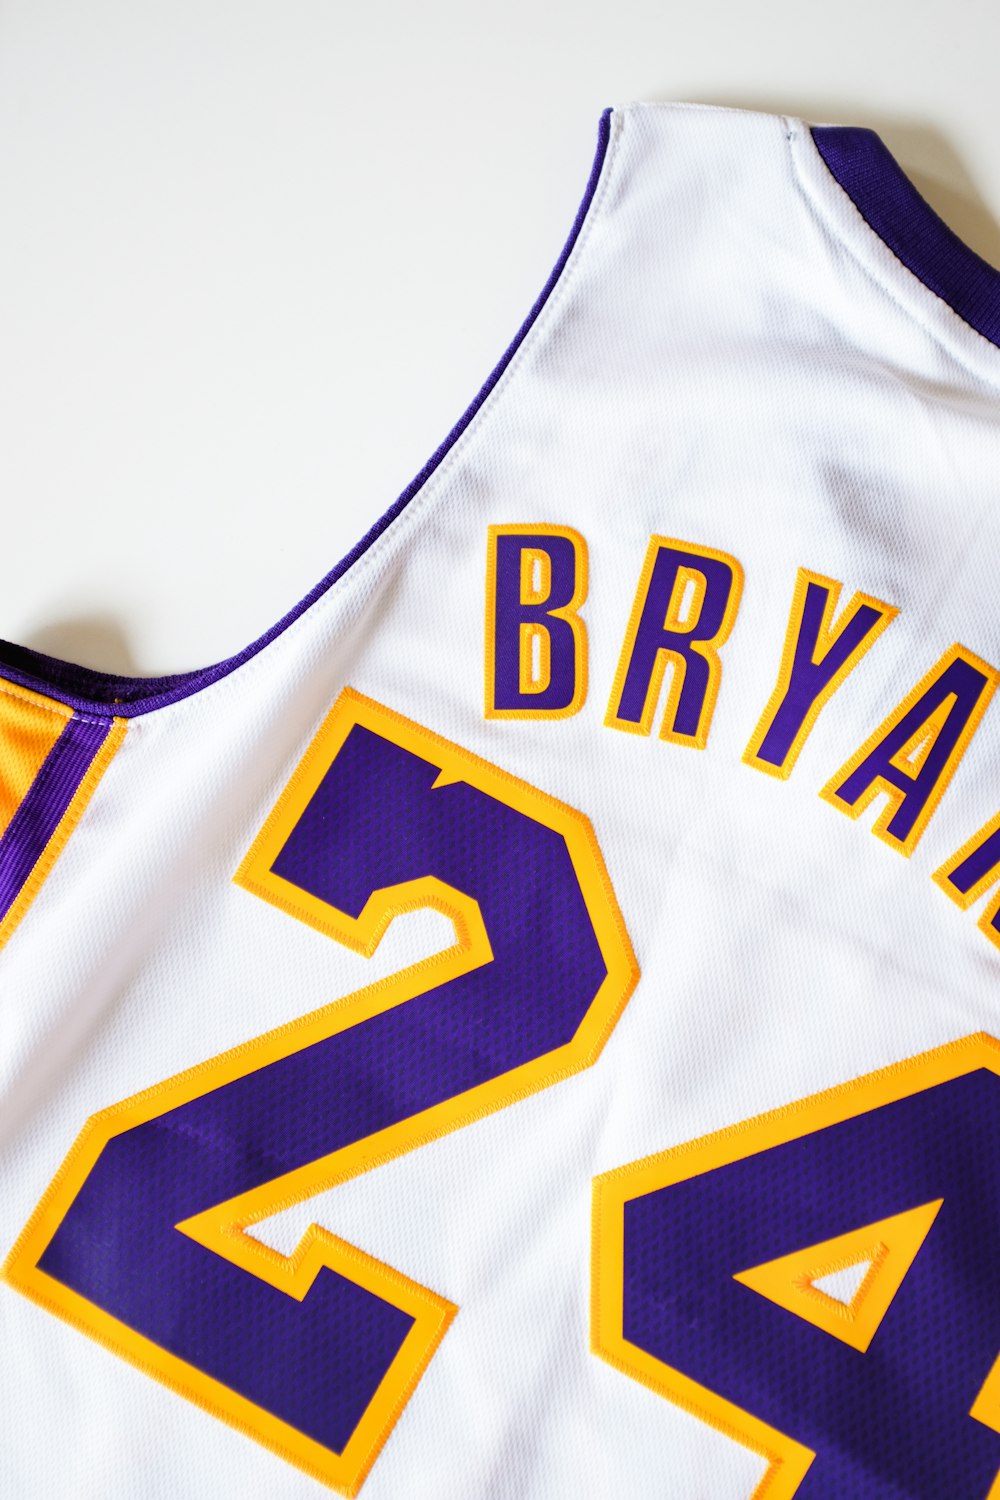 Kobe Bryant, Lakers NBA jersey #24